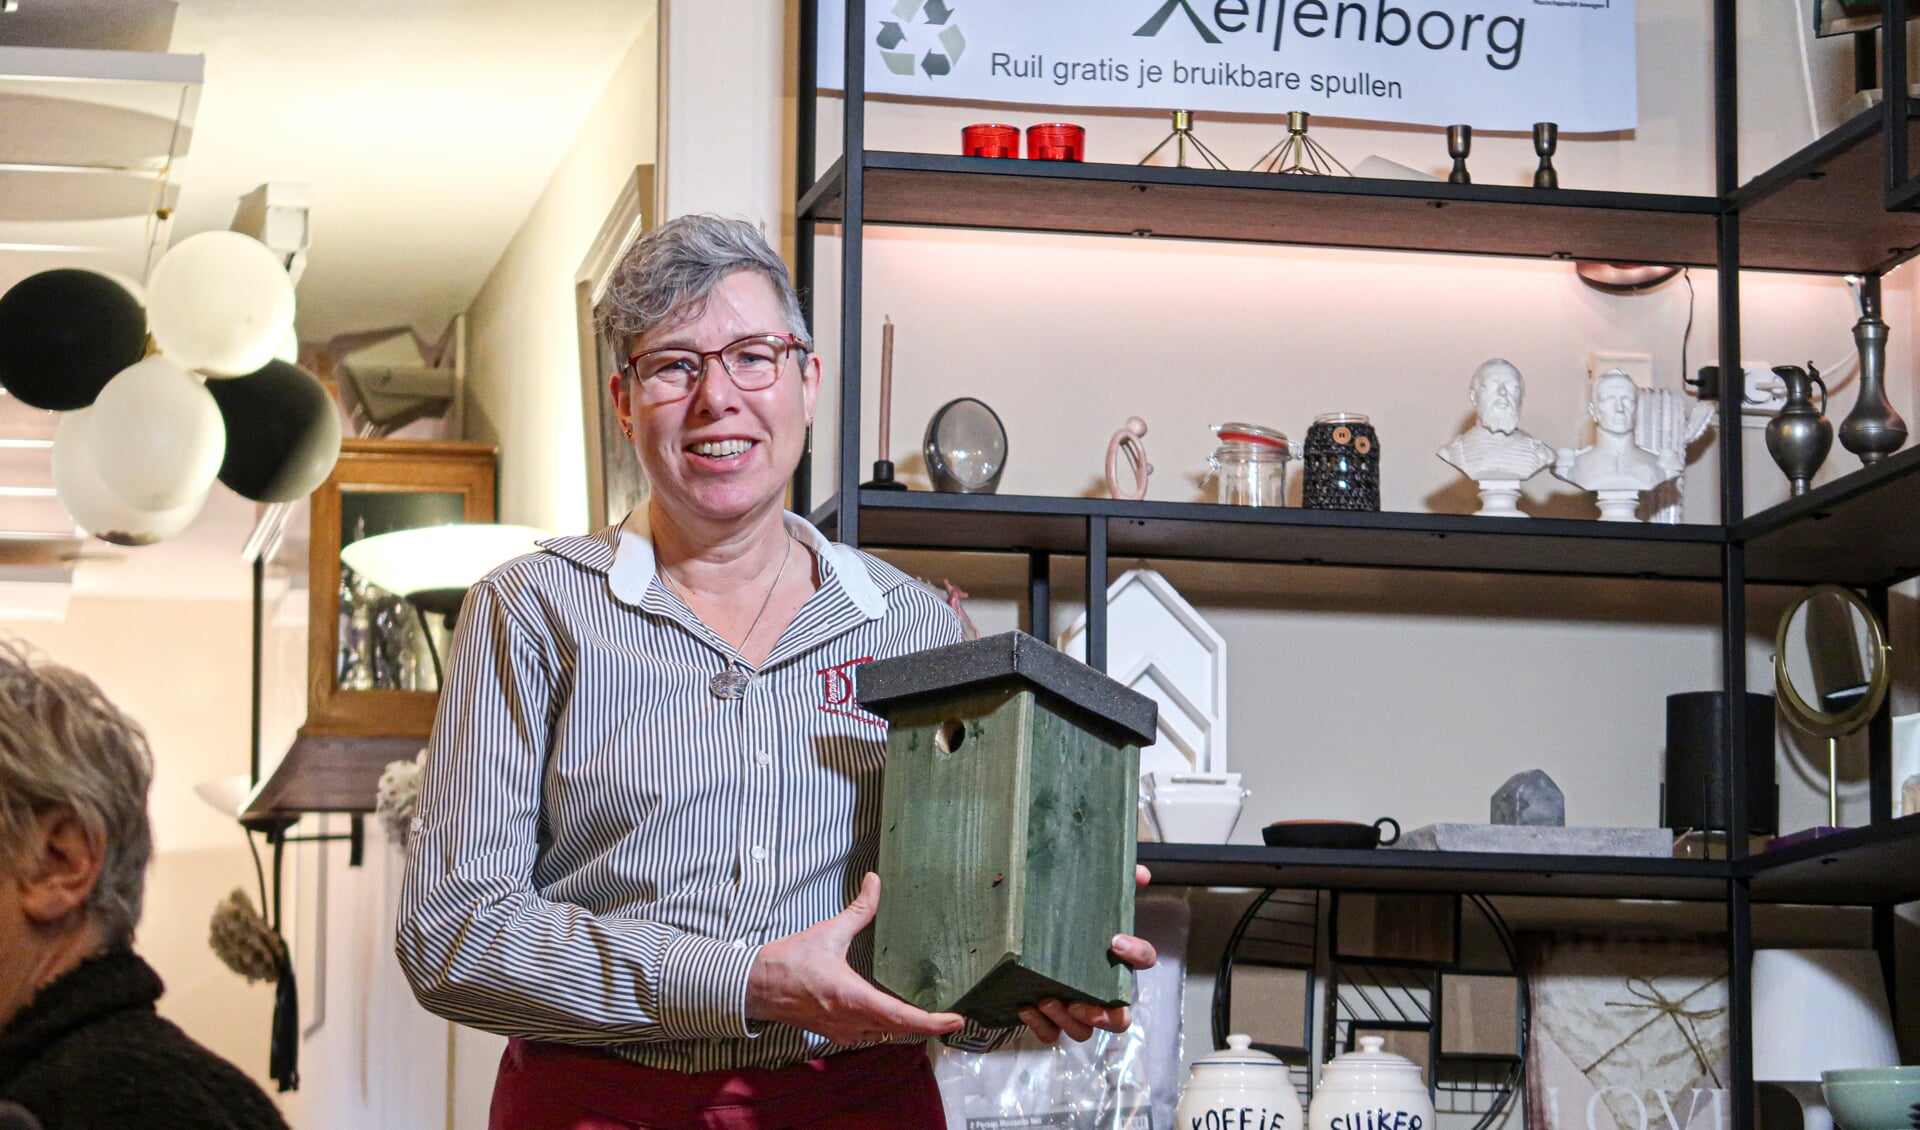 Vrijwilligster Silvie Bergervoet nam het initiatief voor een ruilkast in het dorpshuis in Keijenborg: ‘Zo leuk dat mensen er al volop gebruik van maken!’ Foto: Luuk Stam